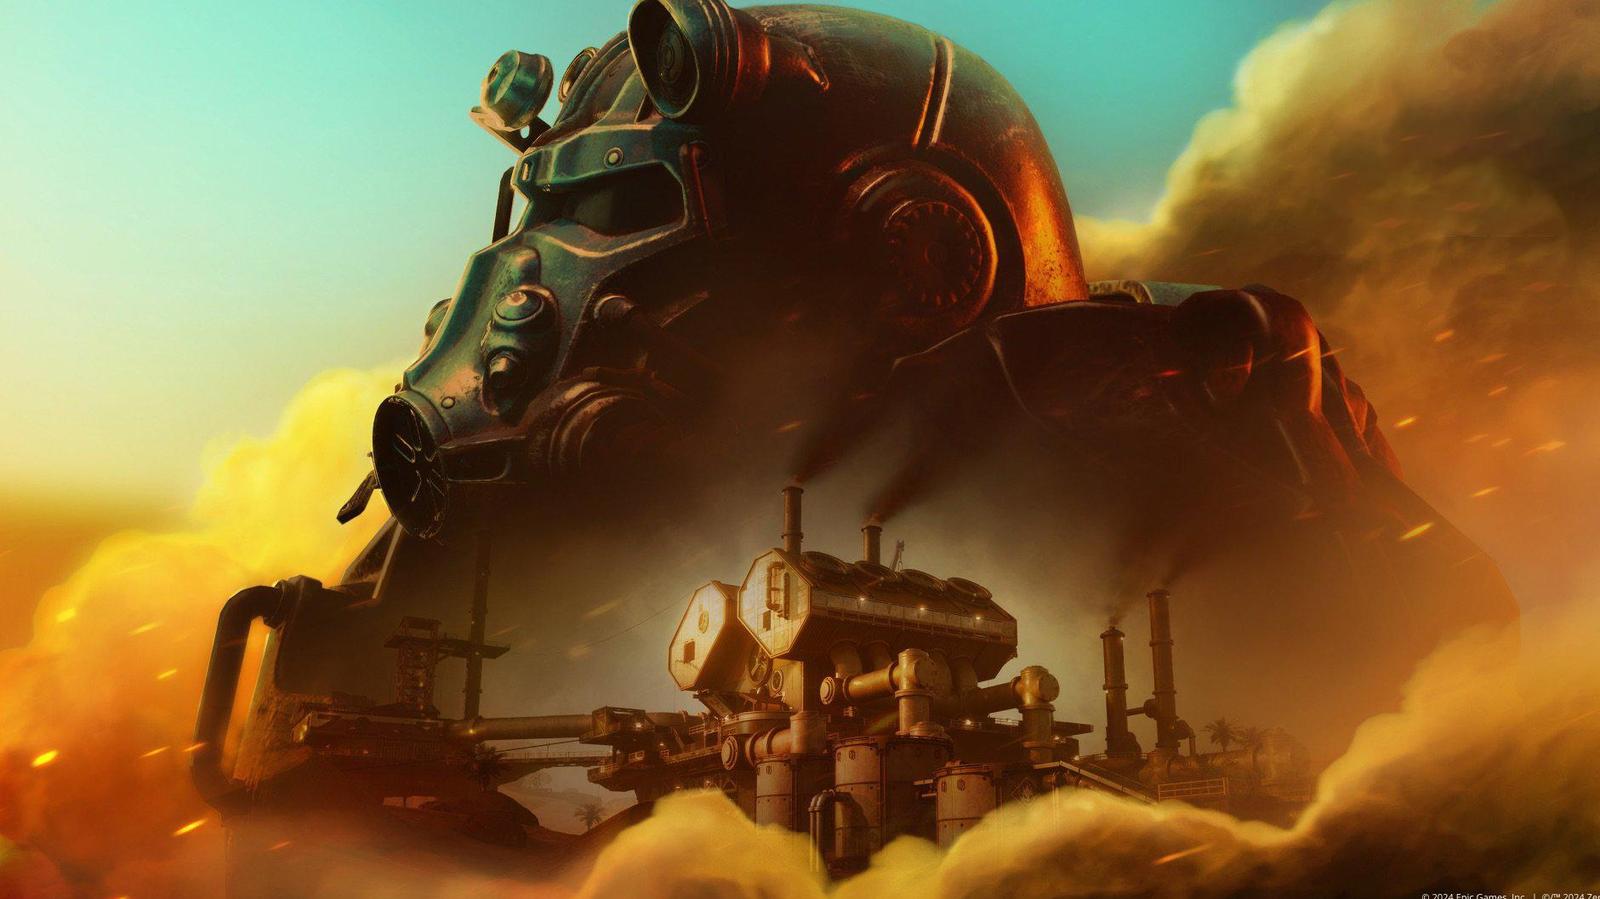 Fallout spojí síly s Fortnite: Do legendárního battle-royalu míří post-apokalyptické téma